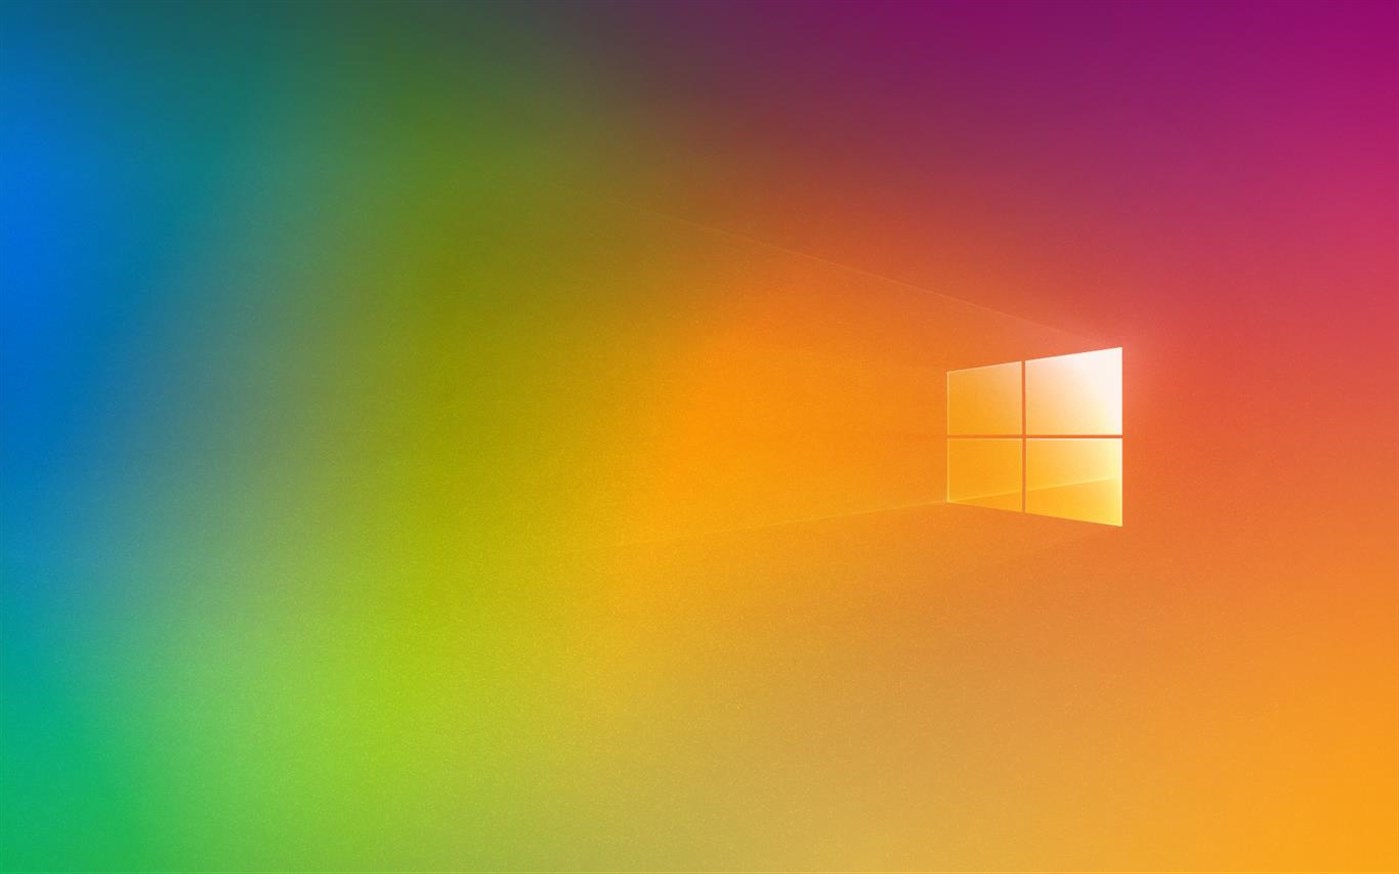 微软发布免费Windows 10主题庆祝“骄傲月”活动